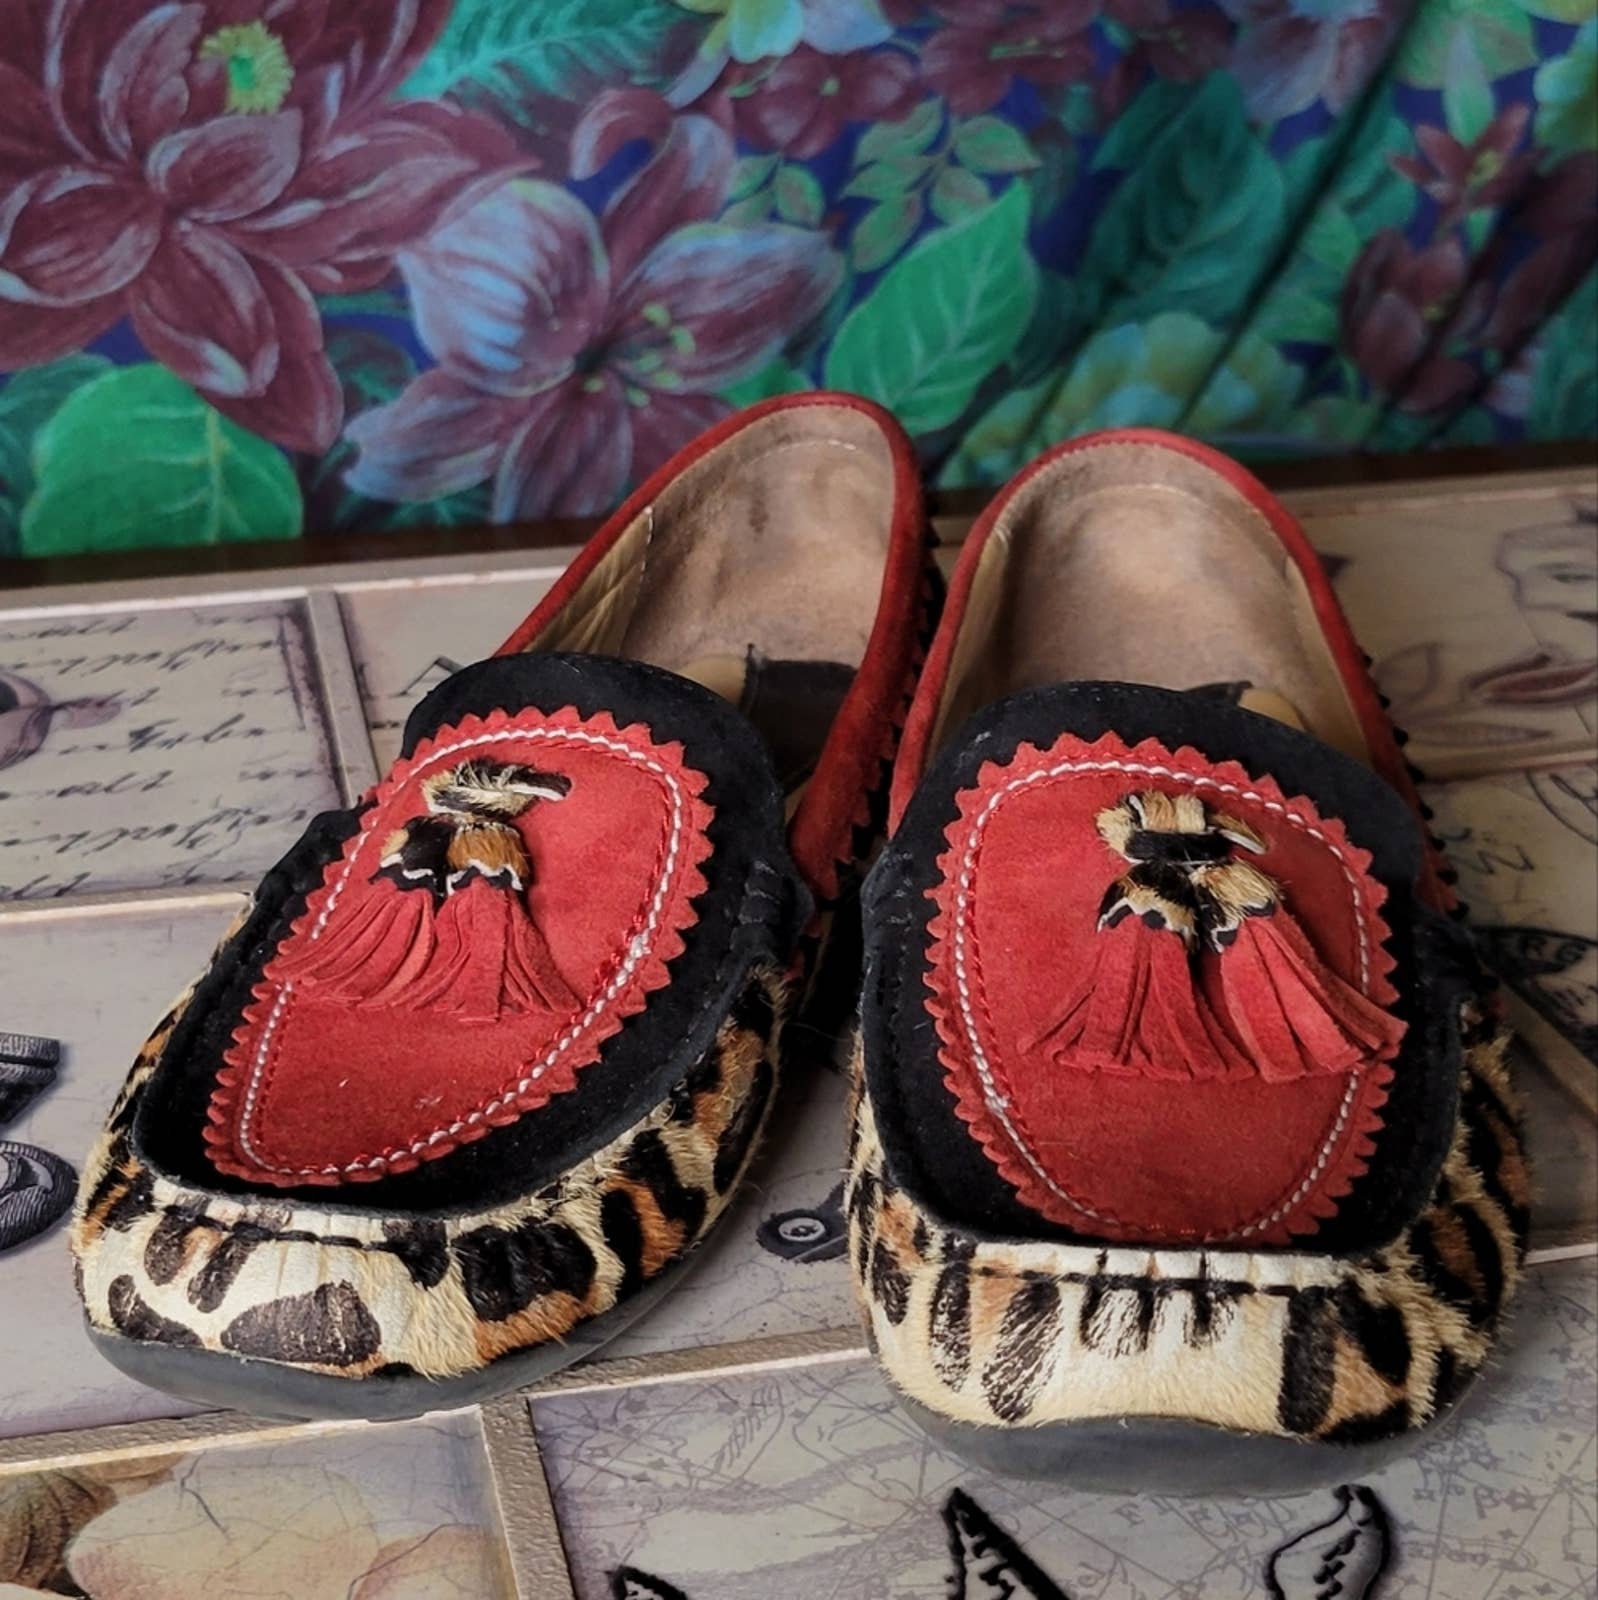 Leopard Print Slip On Shoes Vaneli Vintage Calf Fur Schoenen damesschoenen Instappers Loafers 